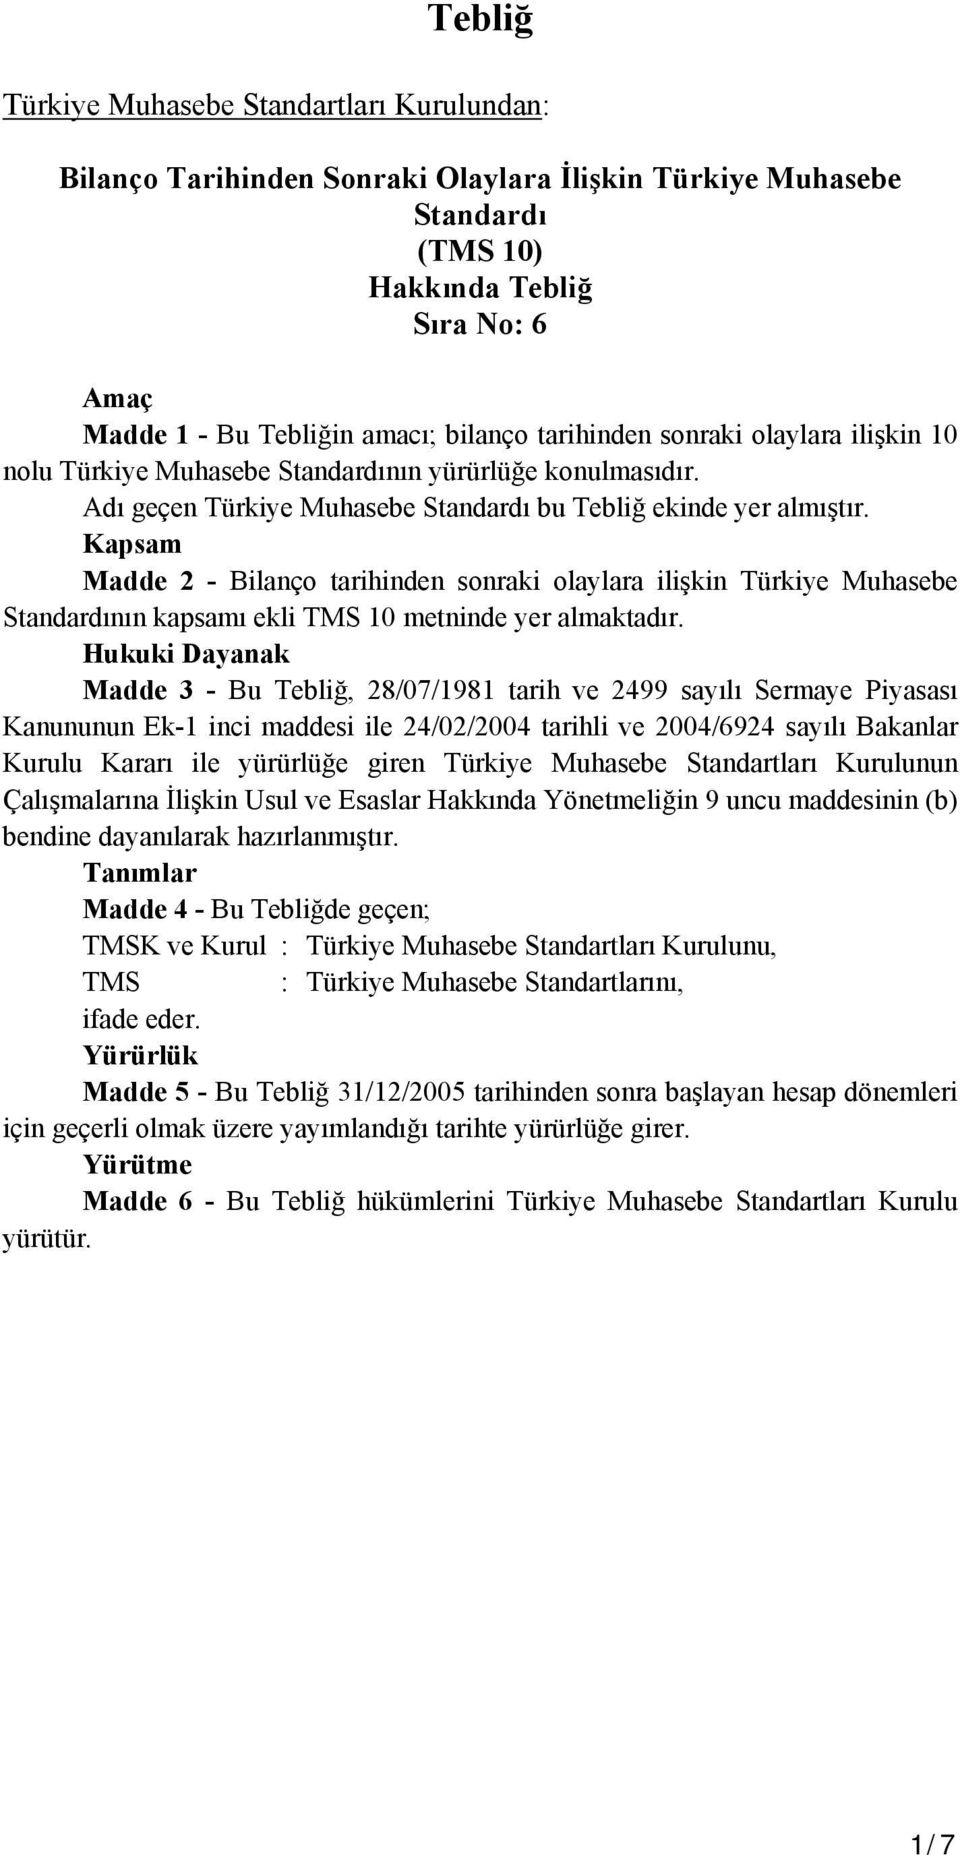 Kapsam Madde 2 - Bilanço tarihinden sonraki olaylara ilişkin Türkiye Muhasebe Standardının kapsamı ekli TMS 10 metninde yer almaktadır.